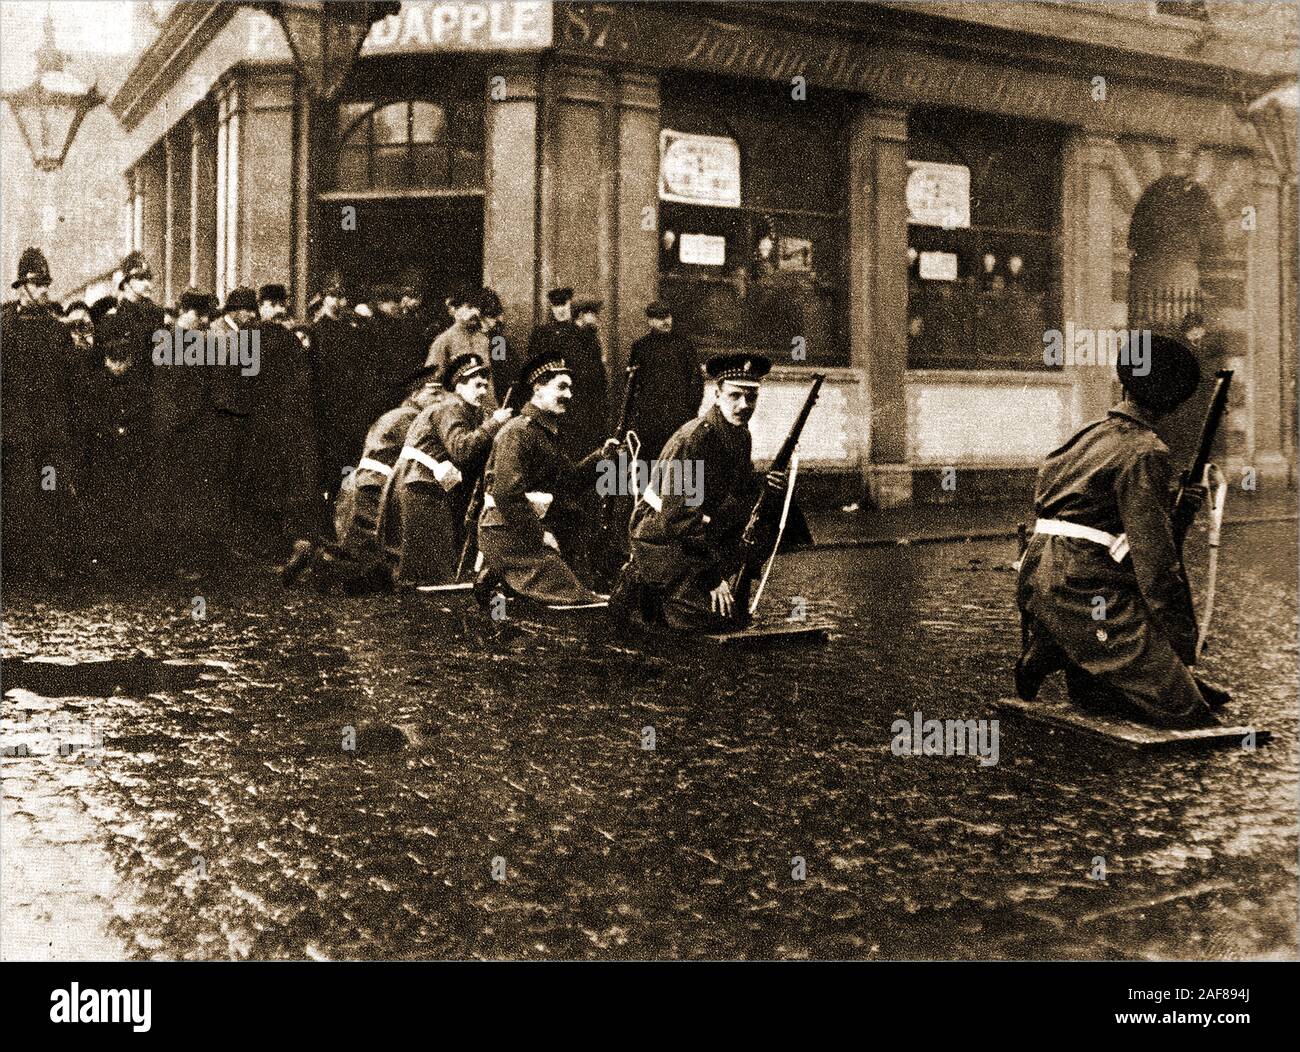 Seige of Sidney Street - die Belagerung der Sidney Street (Januar 1911), auch bekannt als die Schlacht von Stepney, nahm am East End von London zwischen der britischen Polizei von Soldaten unterstützt, nach einem Raub und der Ermordung von drei Polizisten durch lettische revolutionäre. Dieses historische Foto zeigt Soldaten, die den Straßenausgang blockieren. Stockfoto